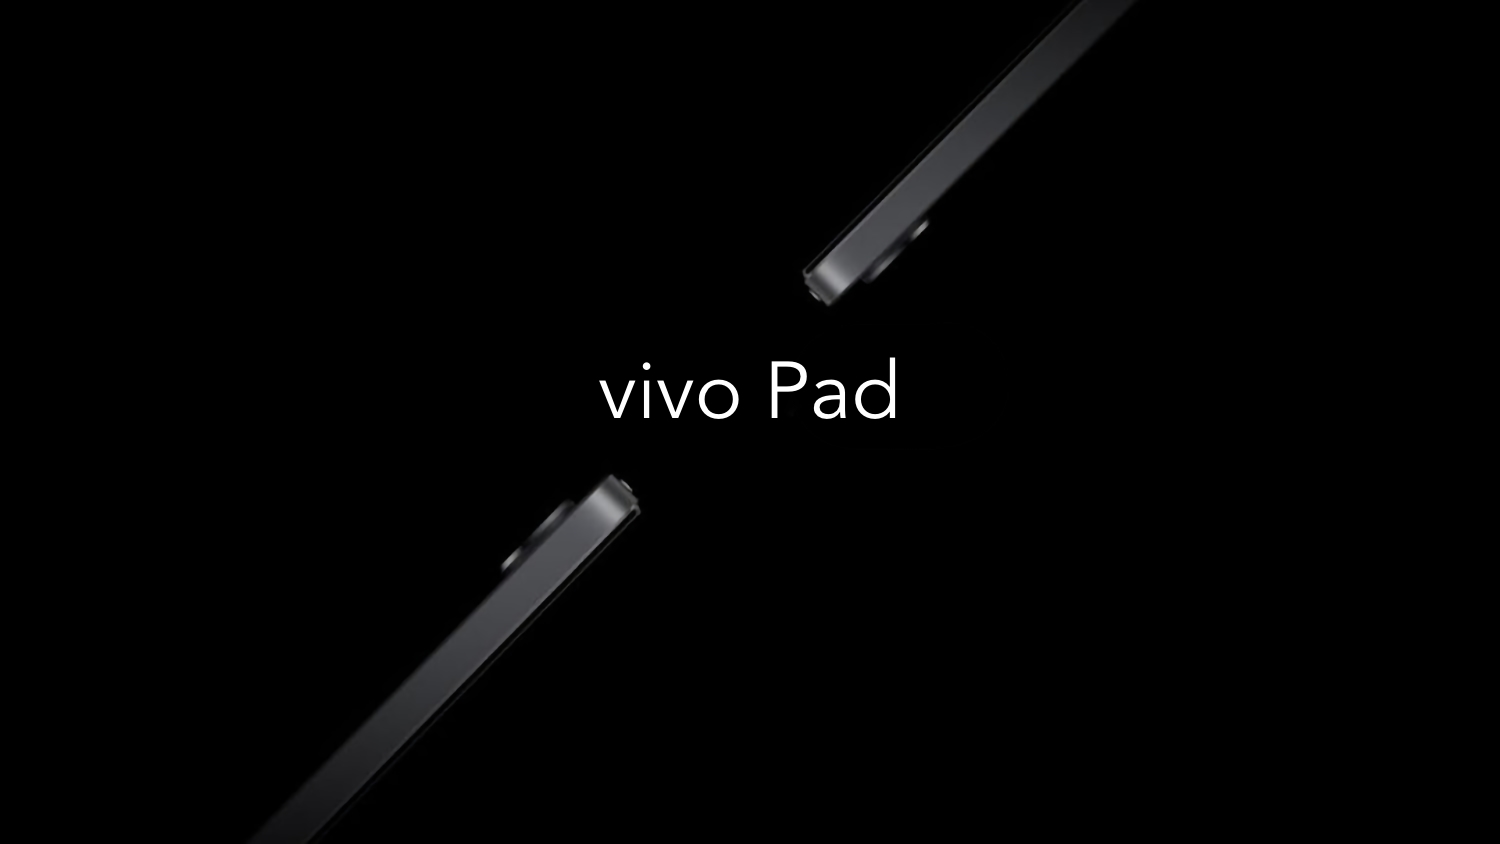 Джерело: перший планшет Vivo вийде в четвертому кварталі цього року